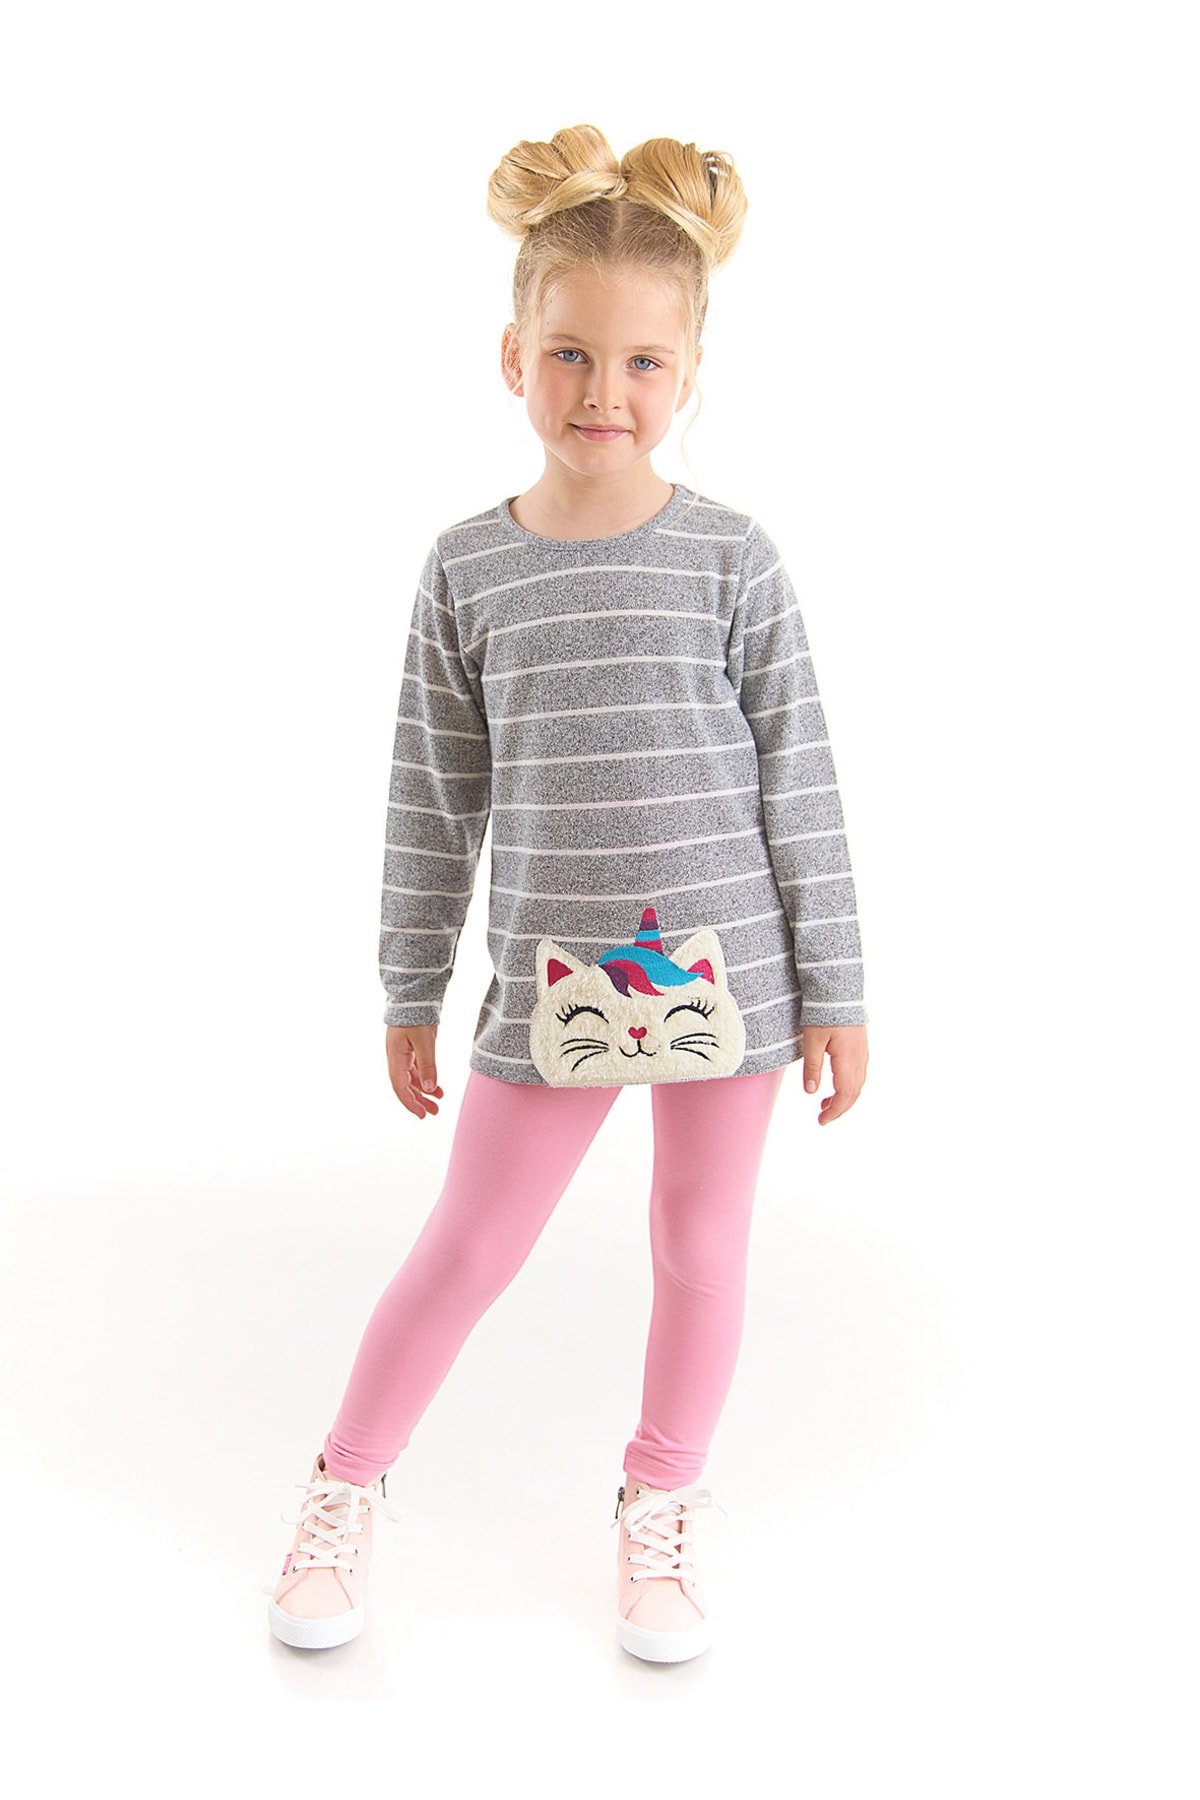 Levně Denokids Cat Unicorn Girls Kids Sweater Leggings Suit